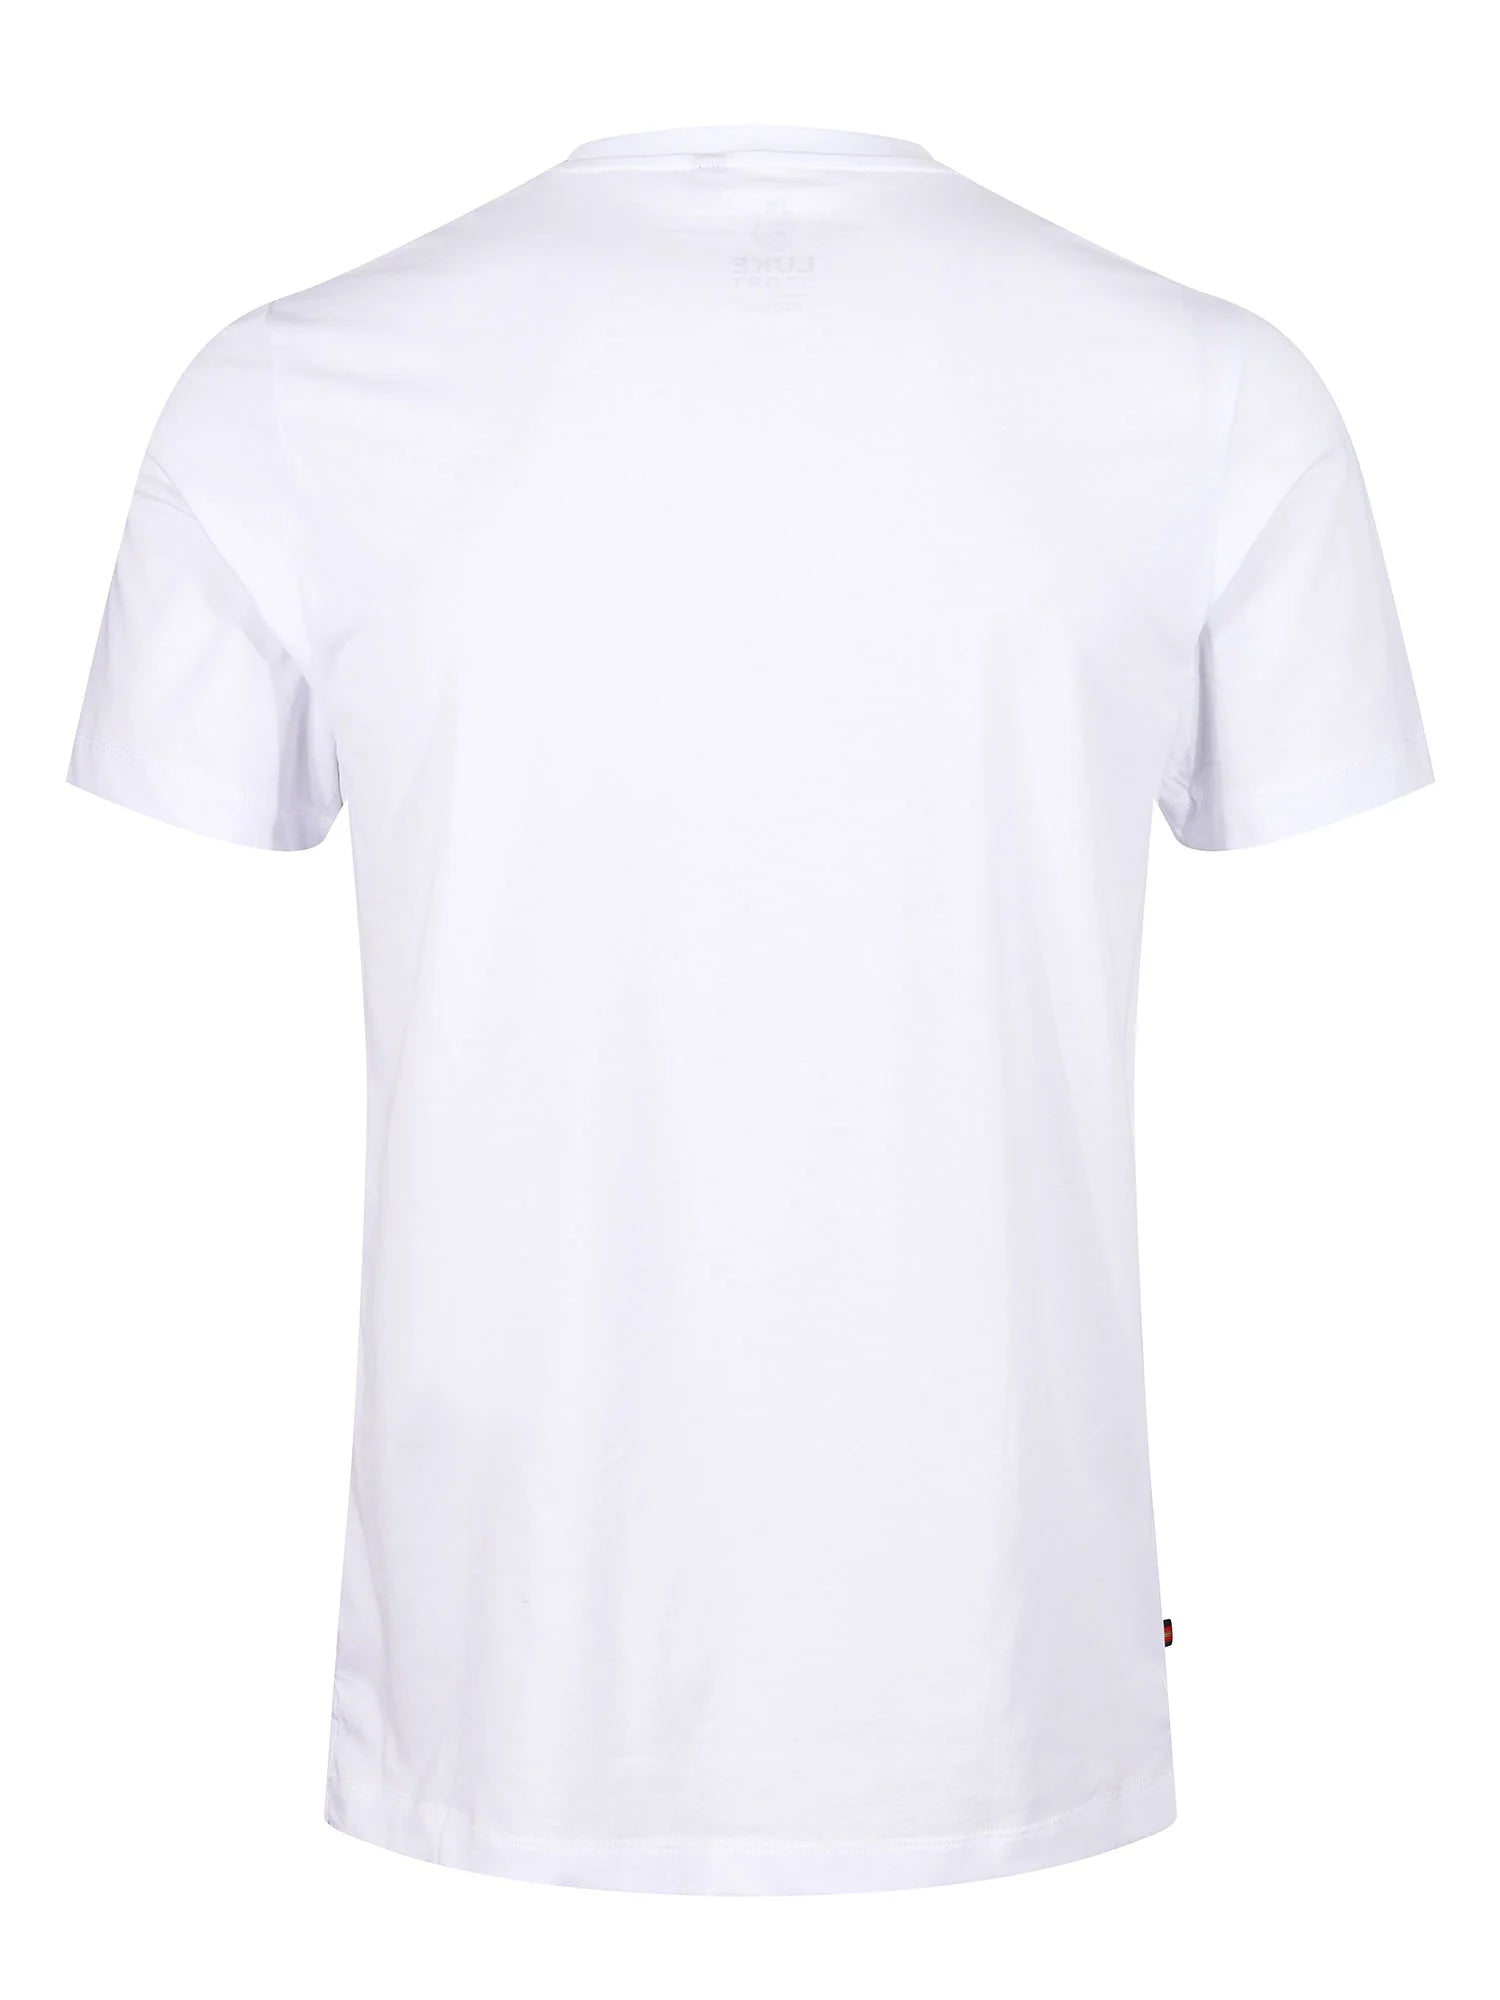 Luke Lions Den T-Shirt White